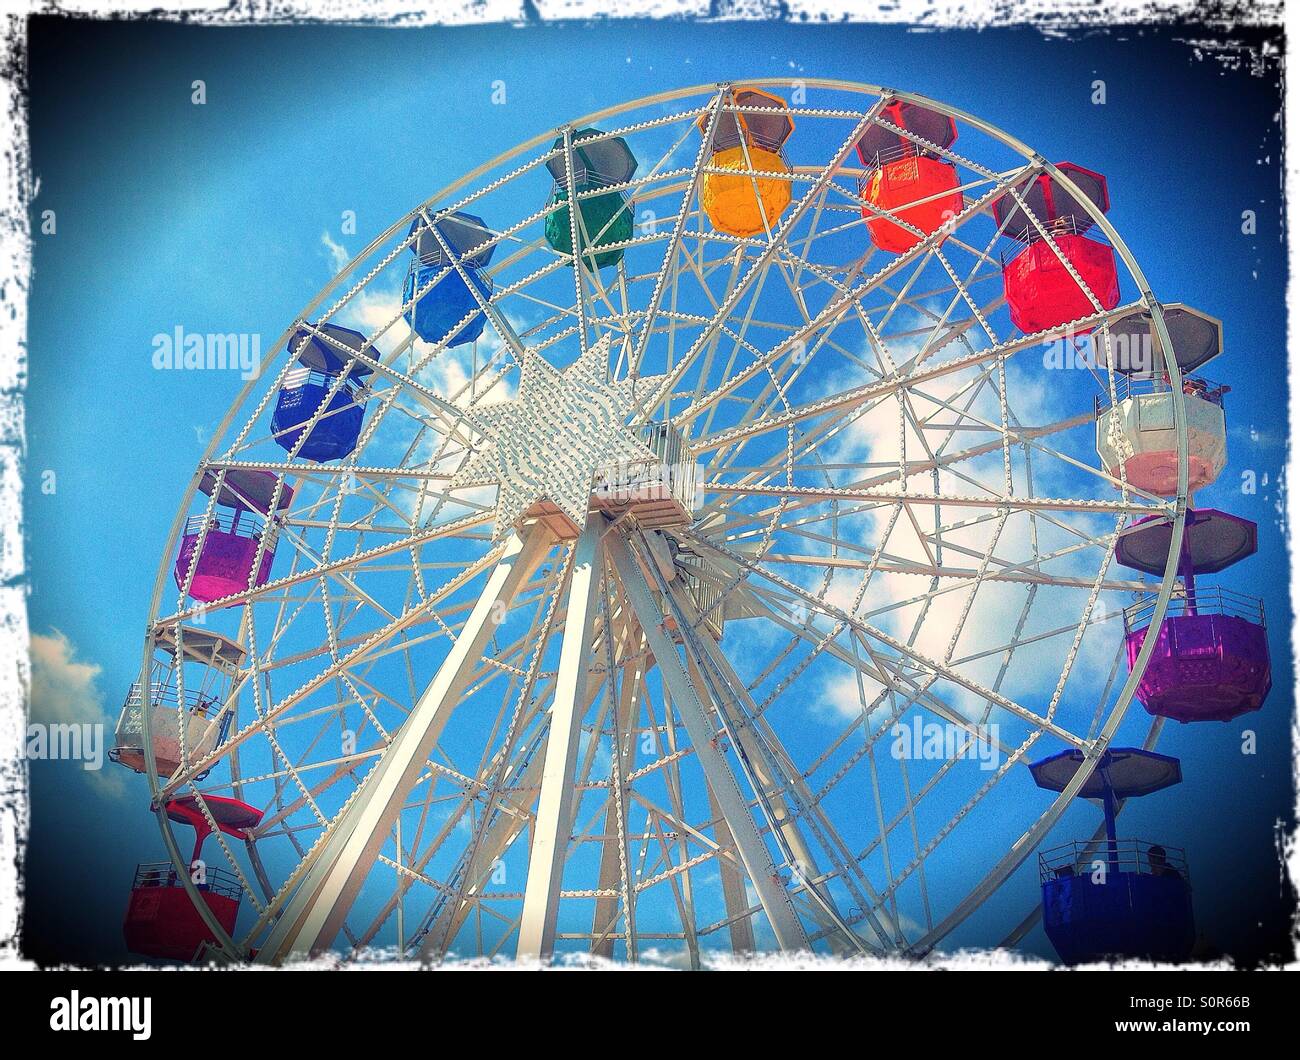 Ferris wheel in Barcelona, Spain Stock Photo